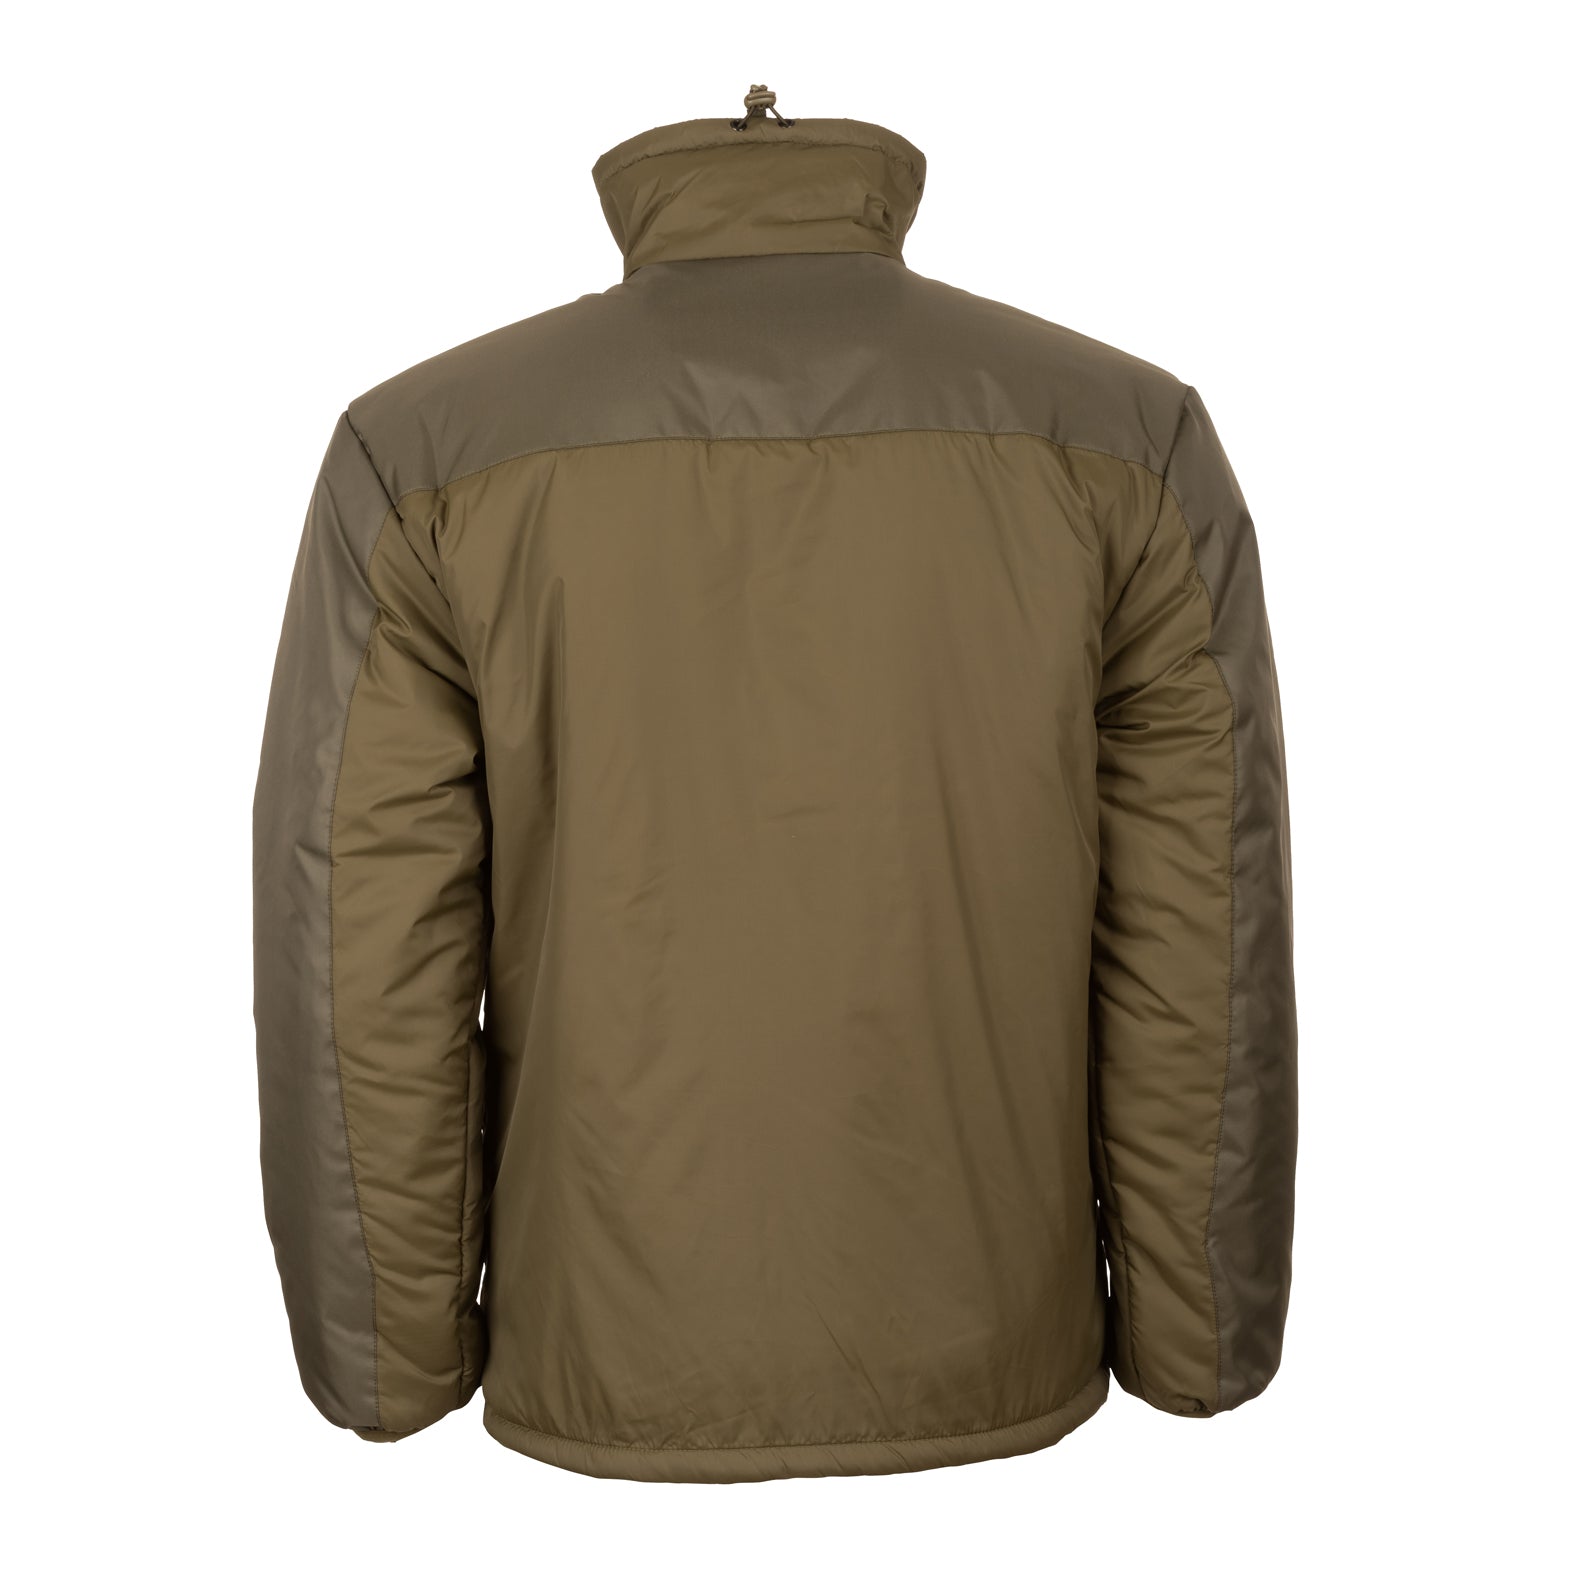 Snugpak Sleeka Elite Insulated Jacket | New Forest Clothing